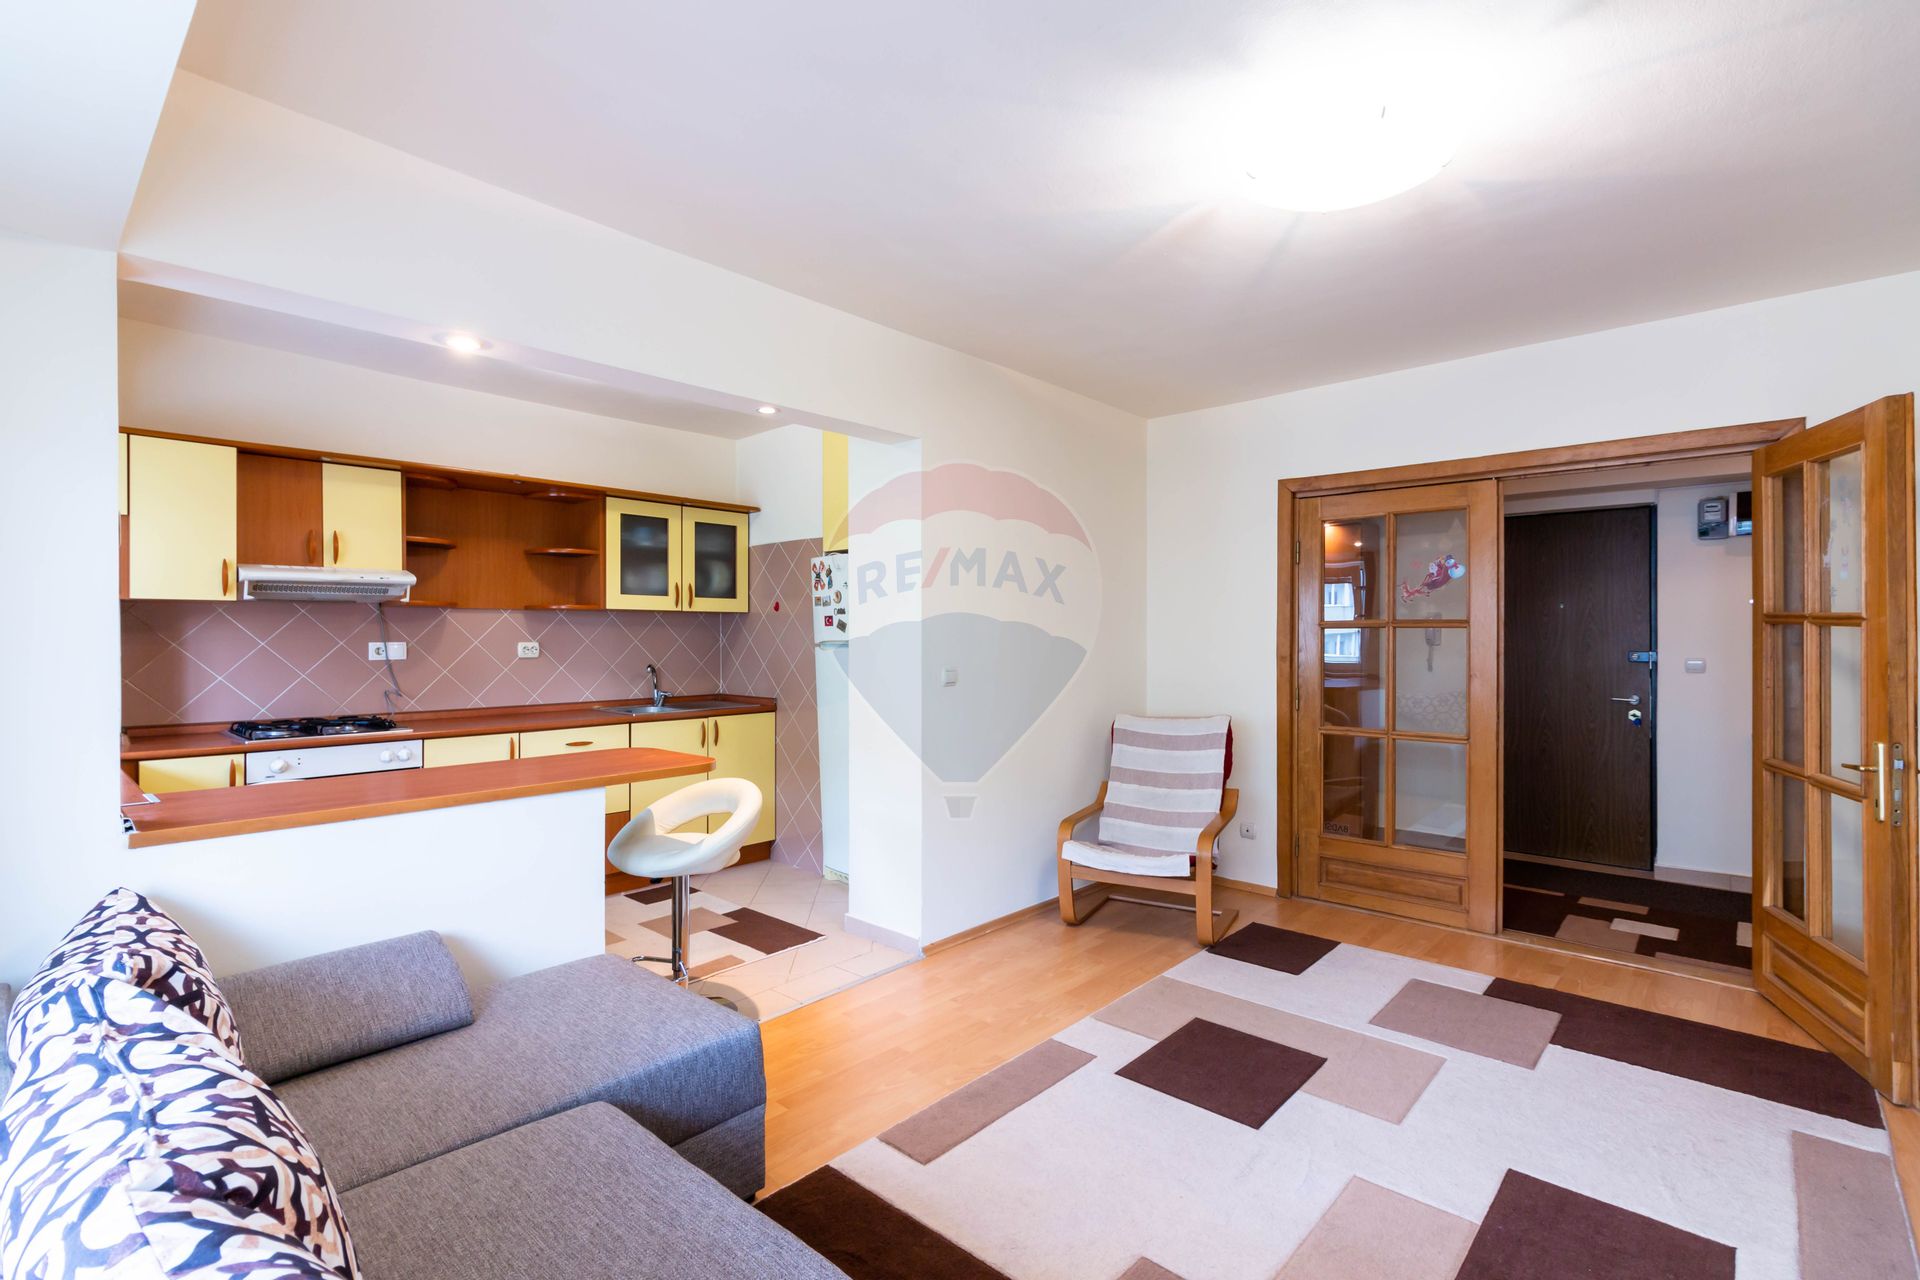 Apartament 3 camere vanzare in bloc de apartamente Bucuresti, Titulescu